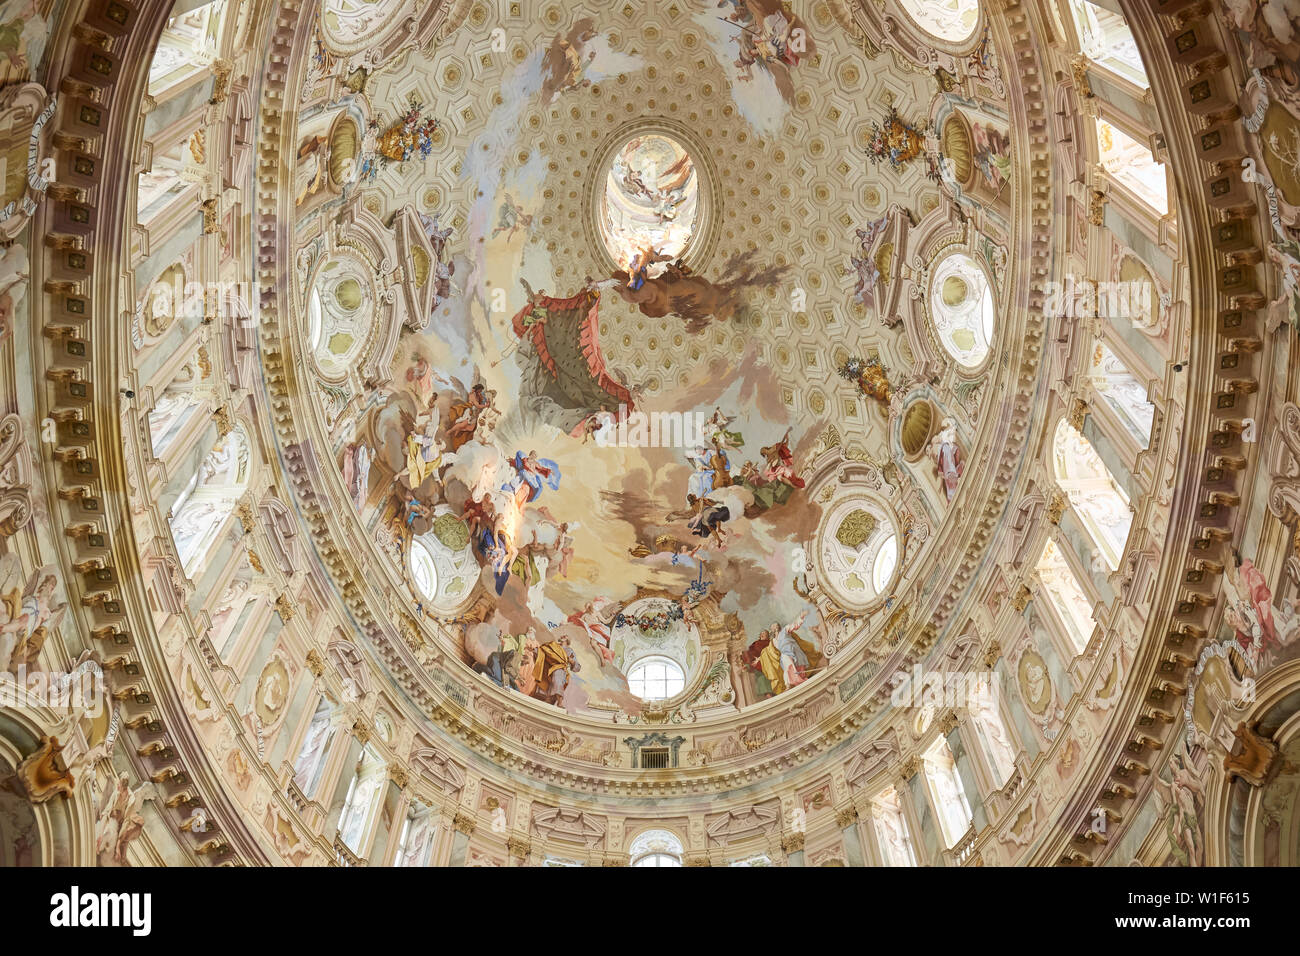 Vicoforte, Italie - 17 août 2016 : Sanctuaire de Vicoforte baroque avec des fresques du dôme elliptique en Piémont, Italie Banque D'Images